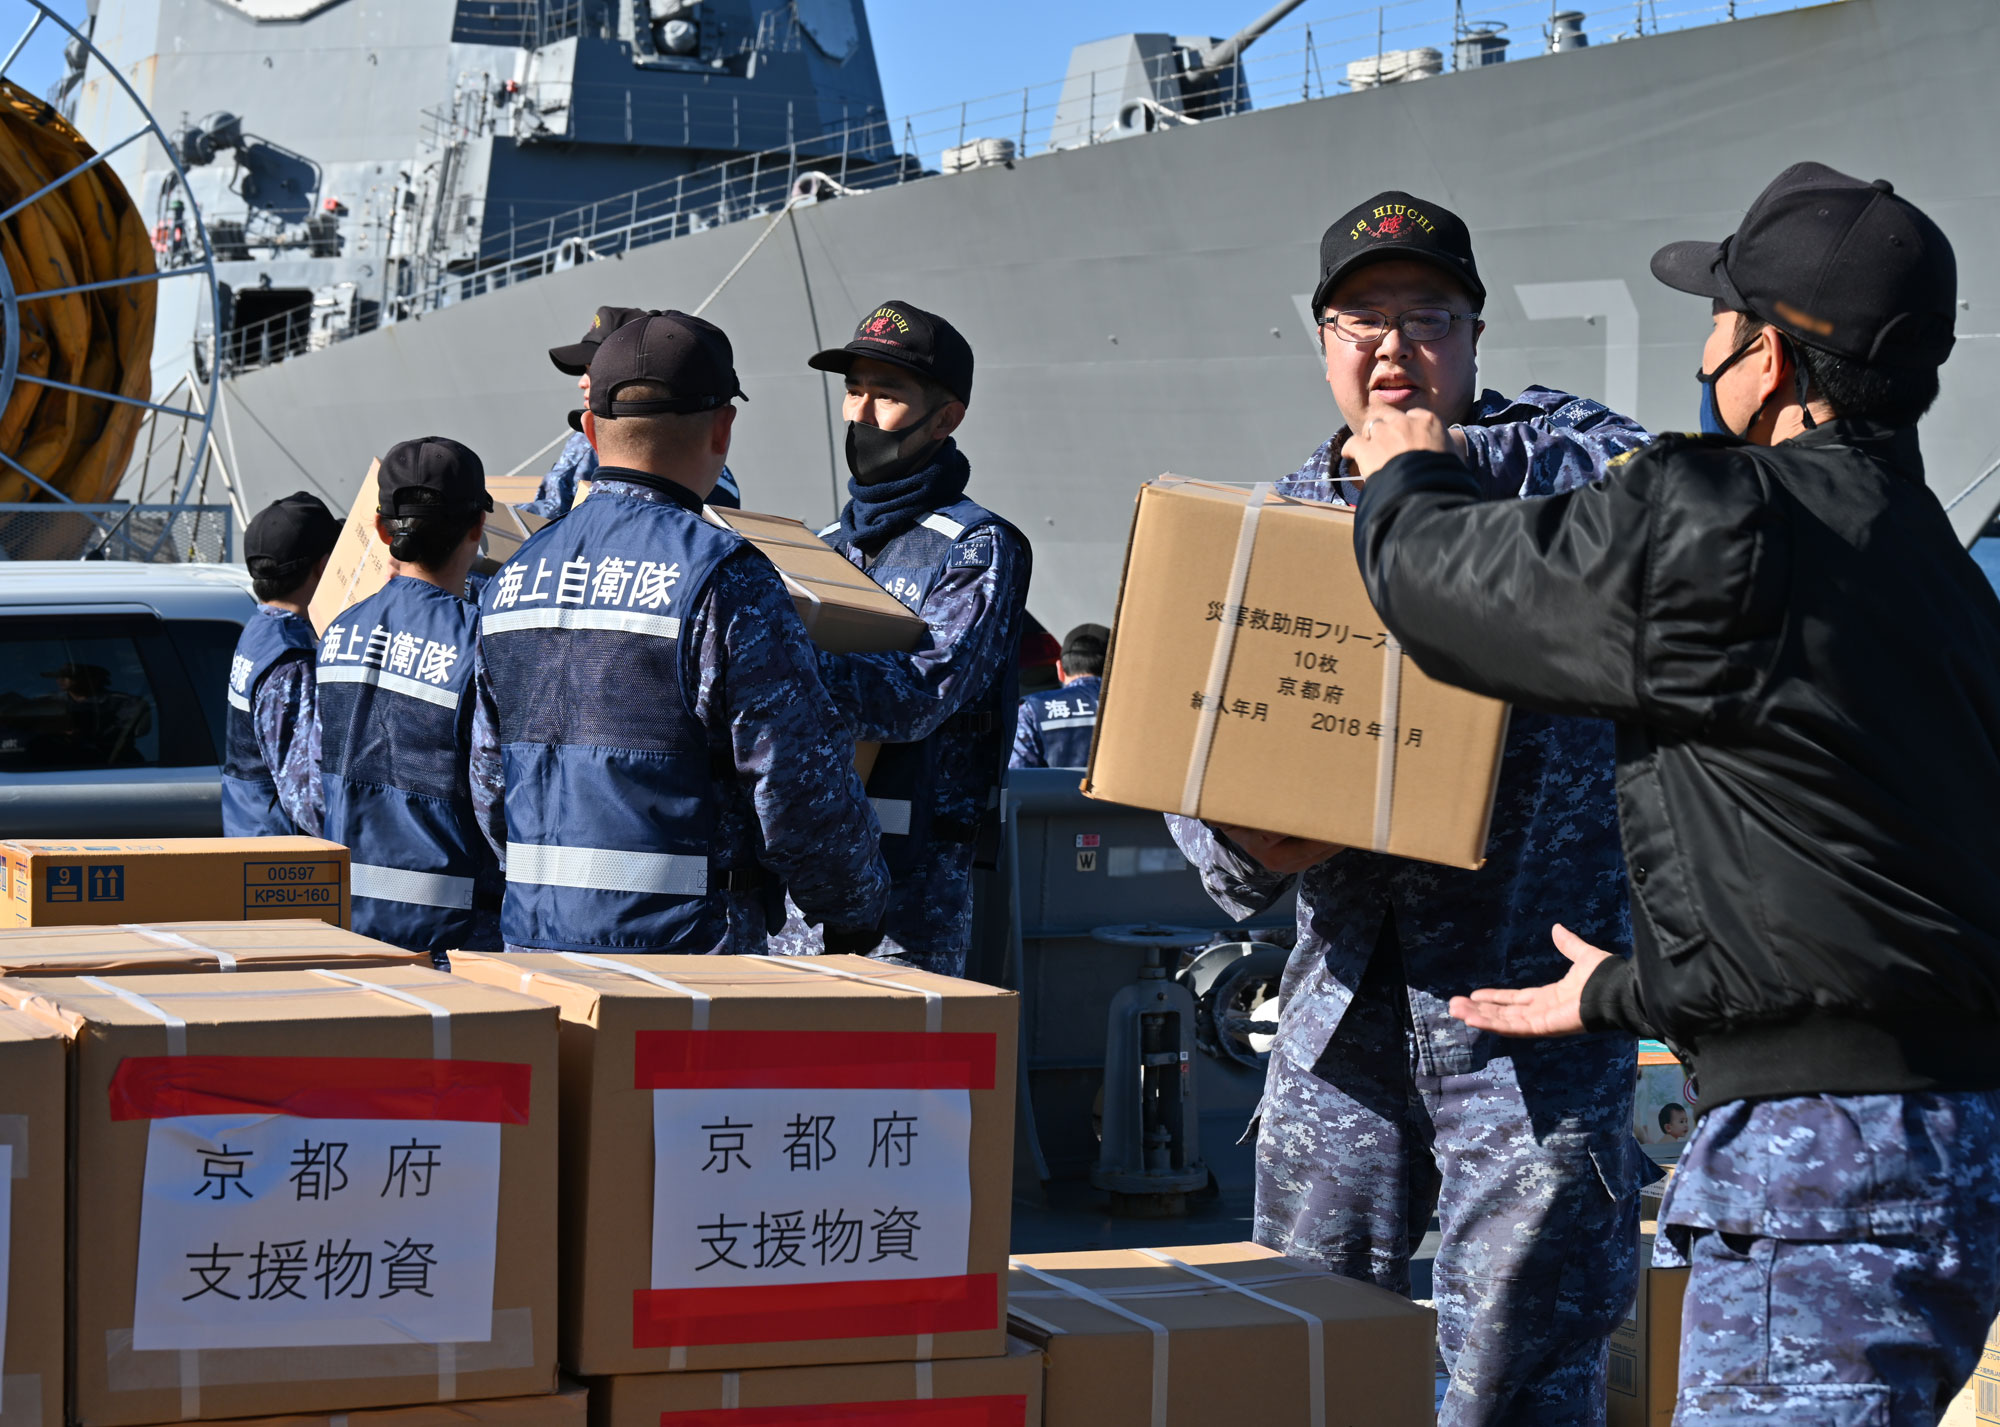 日本海上自衛隊積極運送物資。(翻攝自日本海上自衛隊臉書)